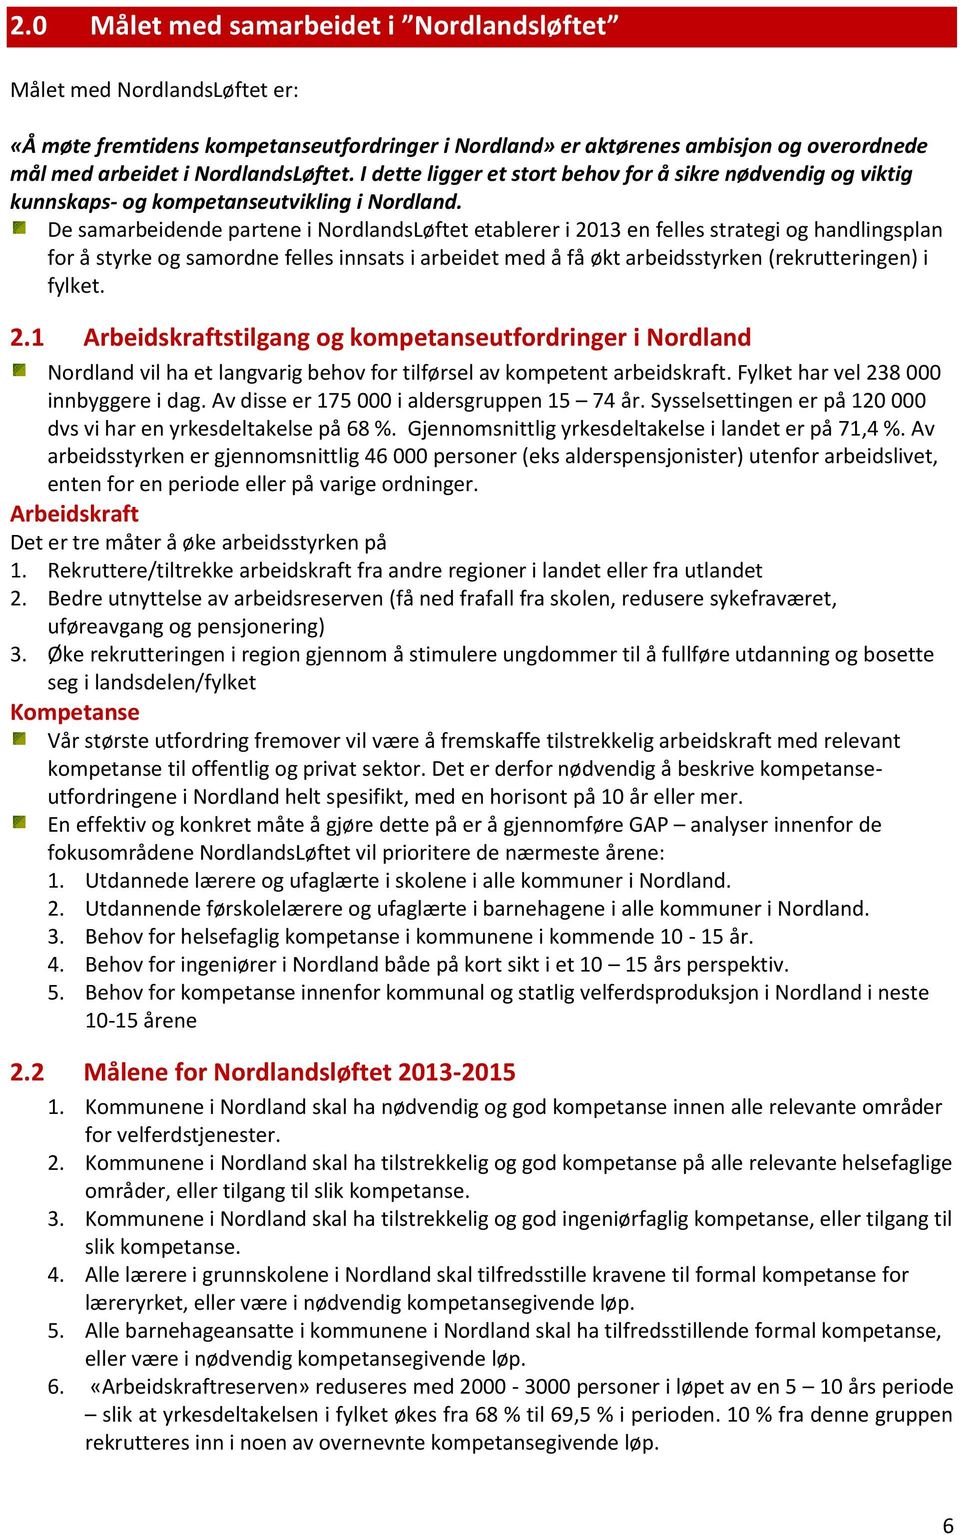 De samarbeidende partene i NordlandsLøftet etablerer i 2013 en felles strategi og handlingsplan for å styrke og samordne felles innsats i arbeidet med å få økt arbeidsstyrken (rekrutteringen) i